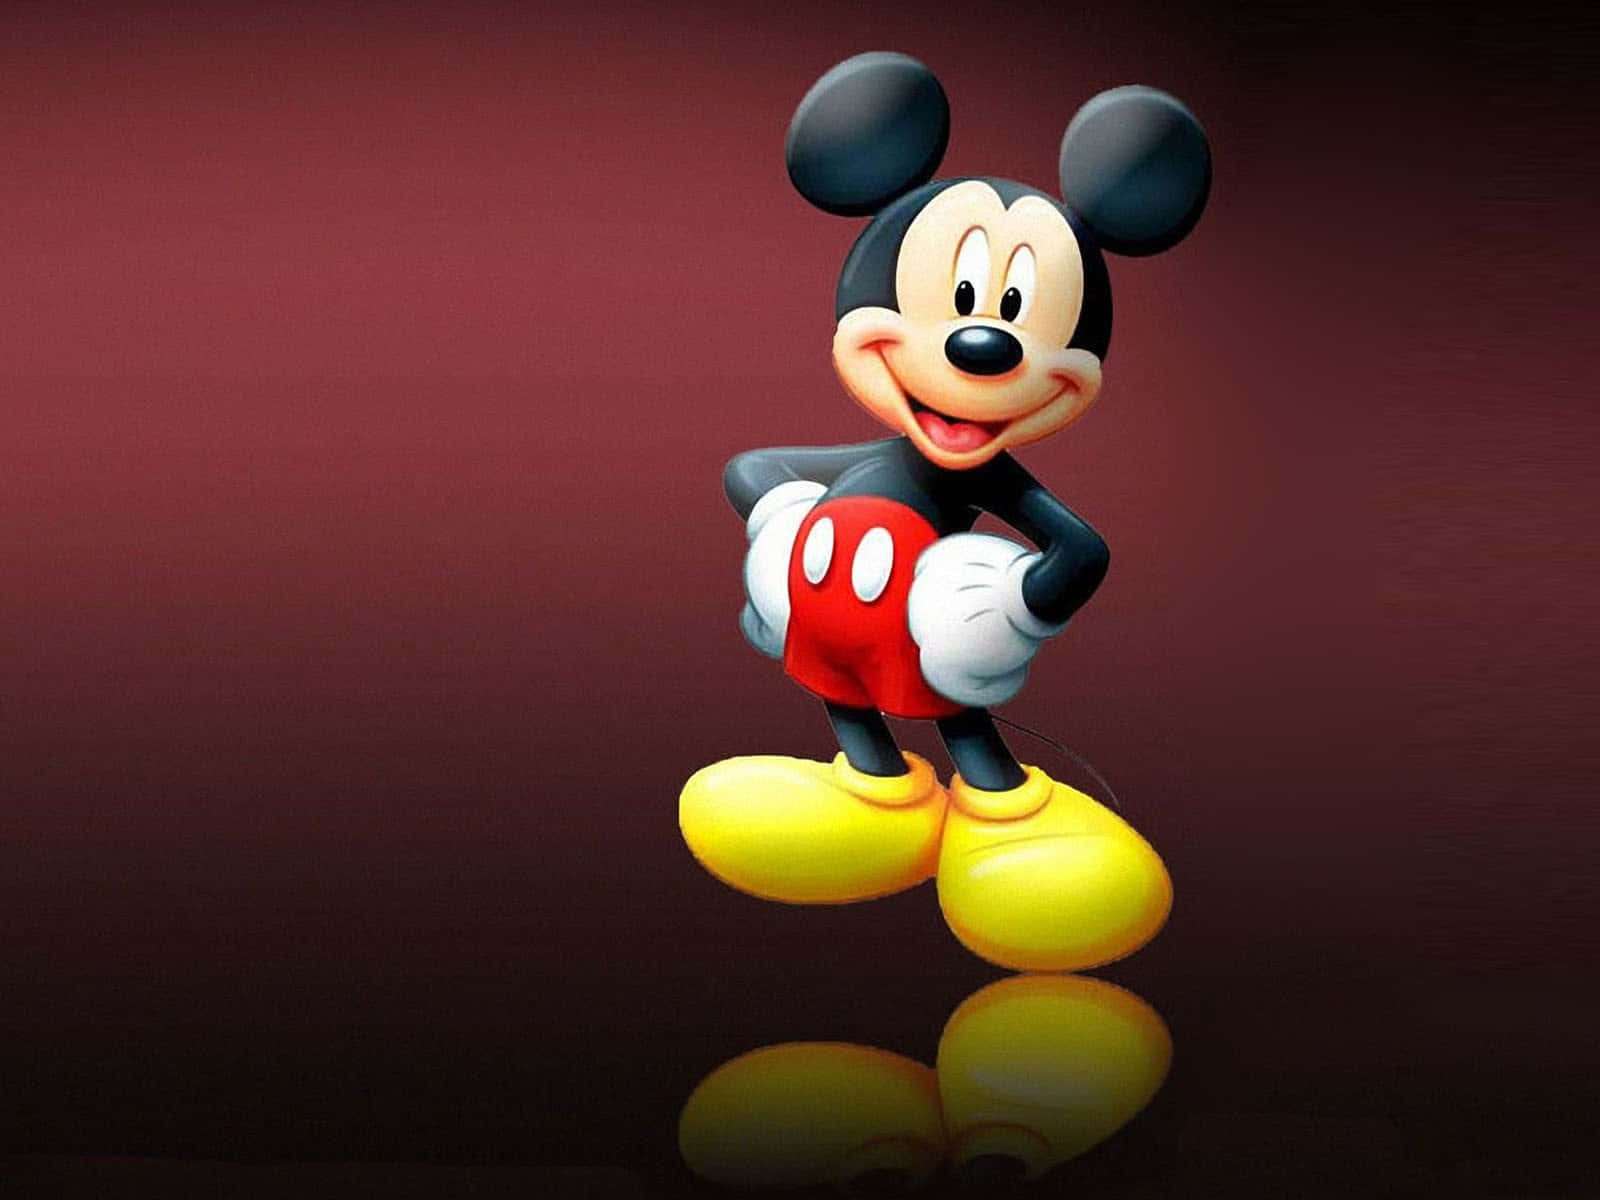 Dieimmer Bezaubernde Micky Maus In Ihrer Ganzen Pracht!